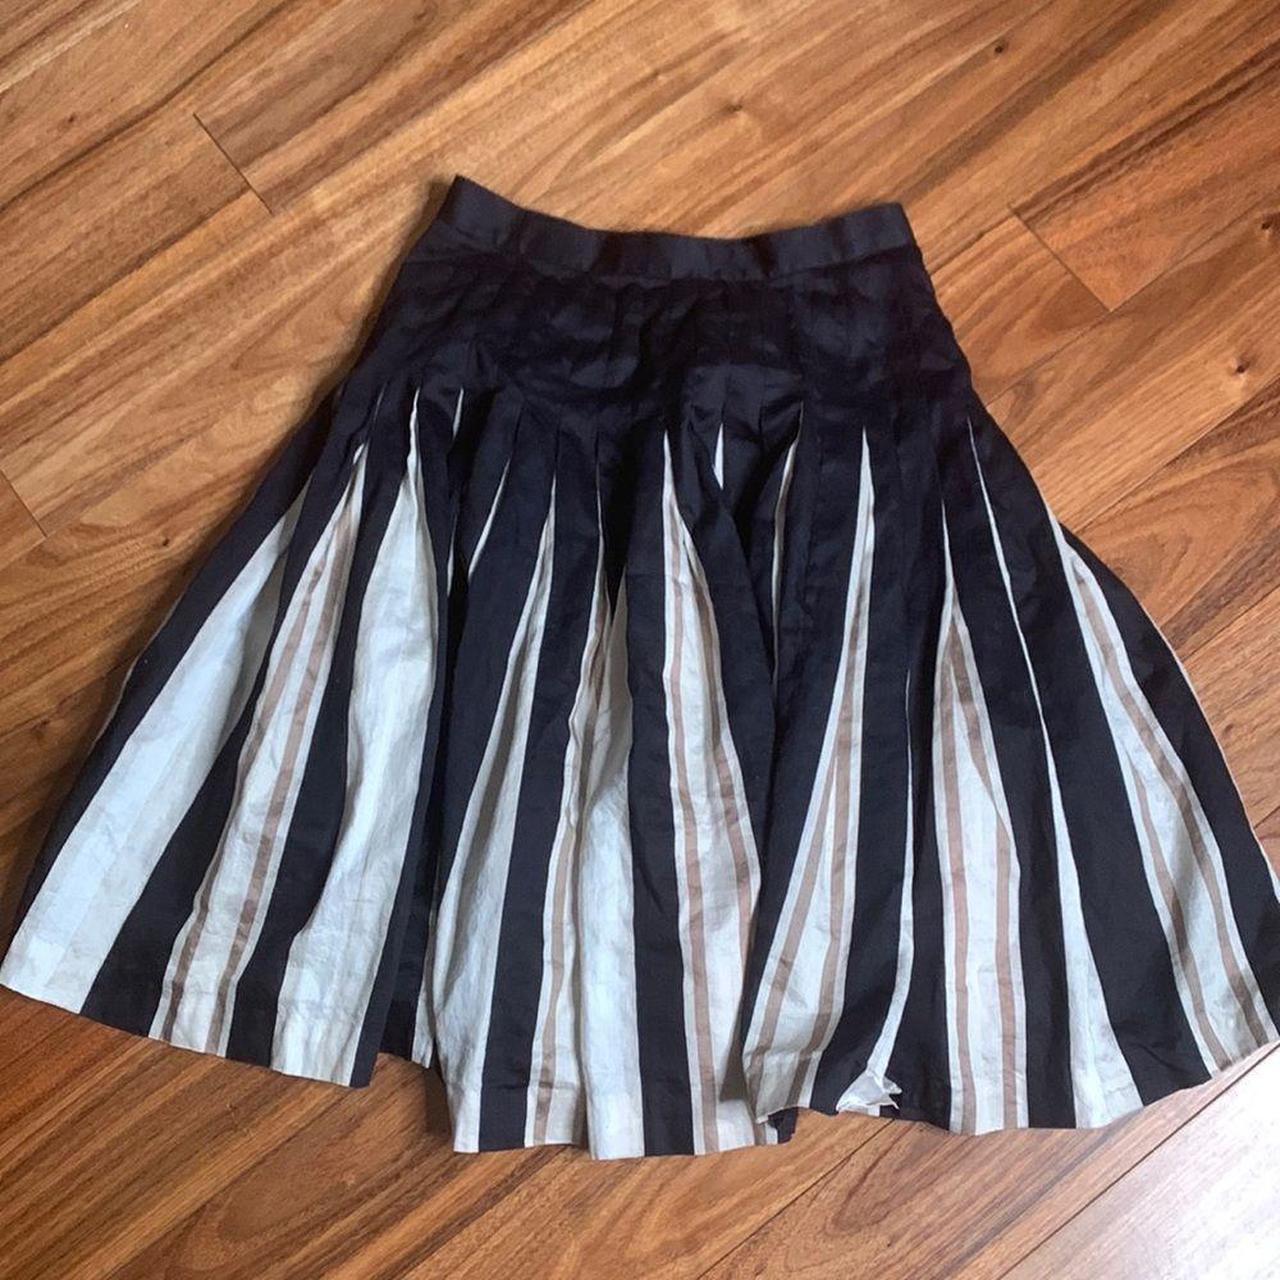 Product Image 1 - Fairy grunge pleated mini skirt
School